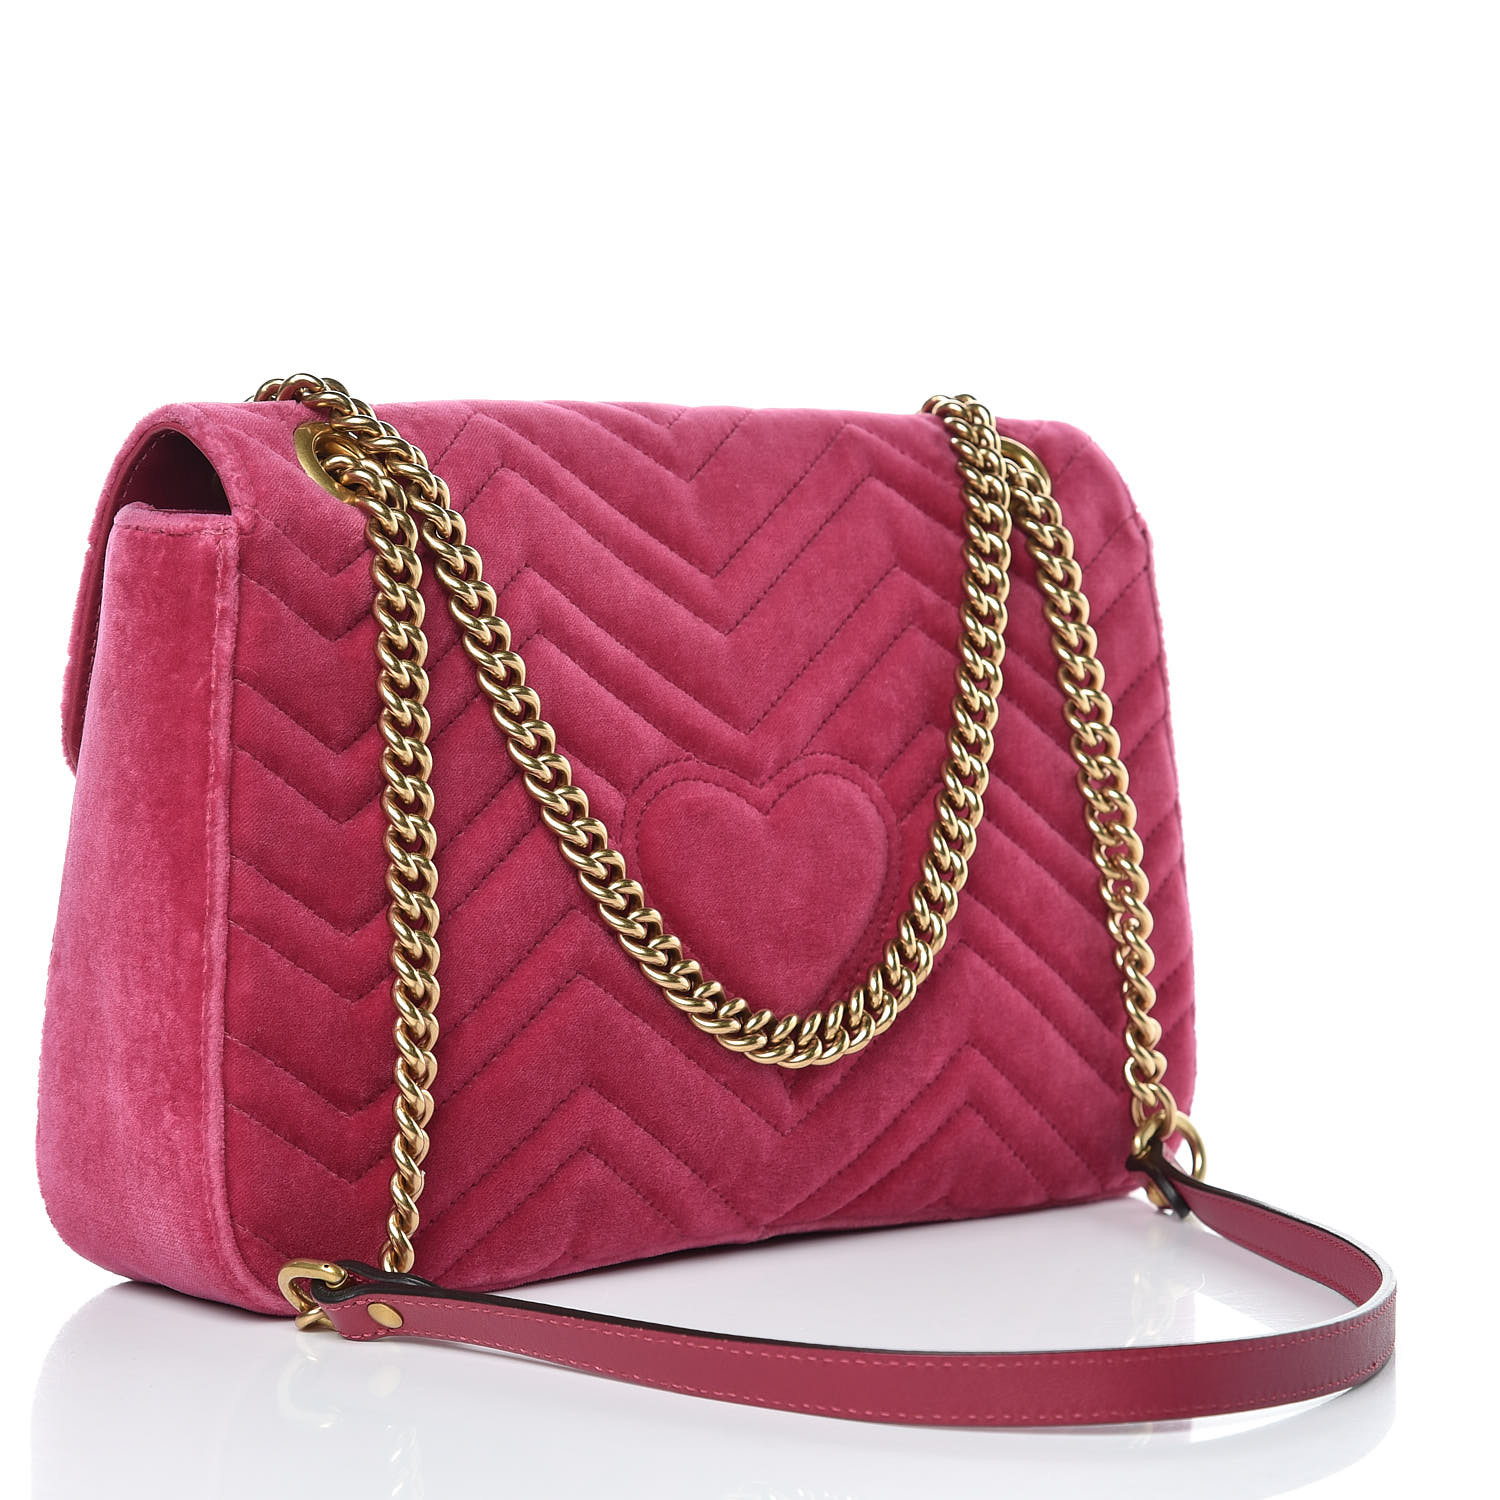 GUCCI Velvet Embroidered Medium Blind For Love Marmont Shoulder Bag Pink 396744